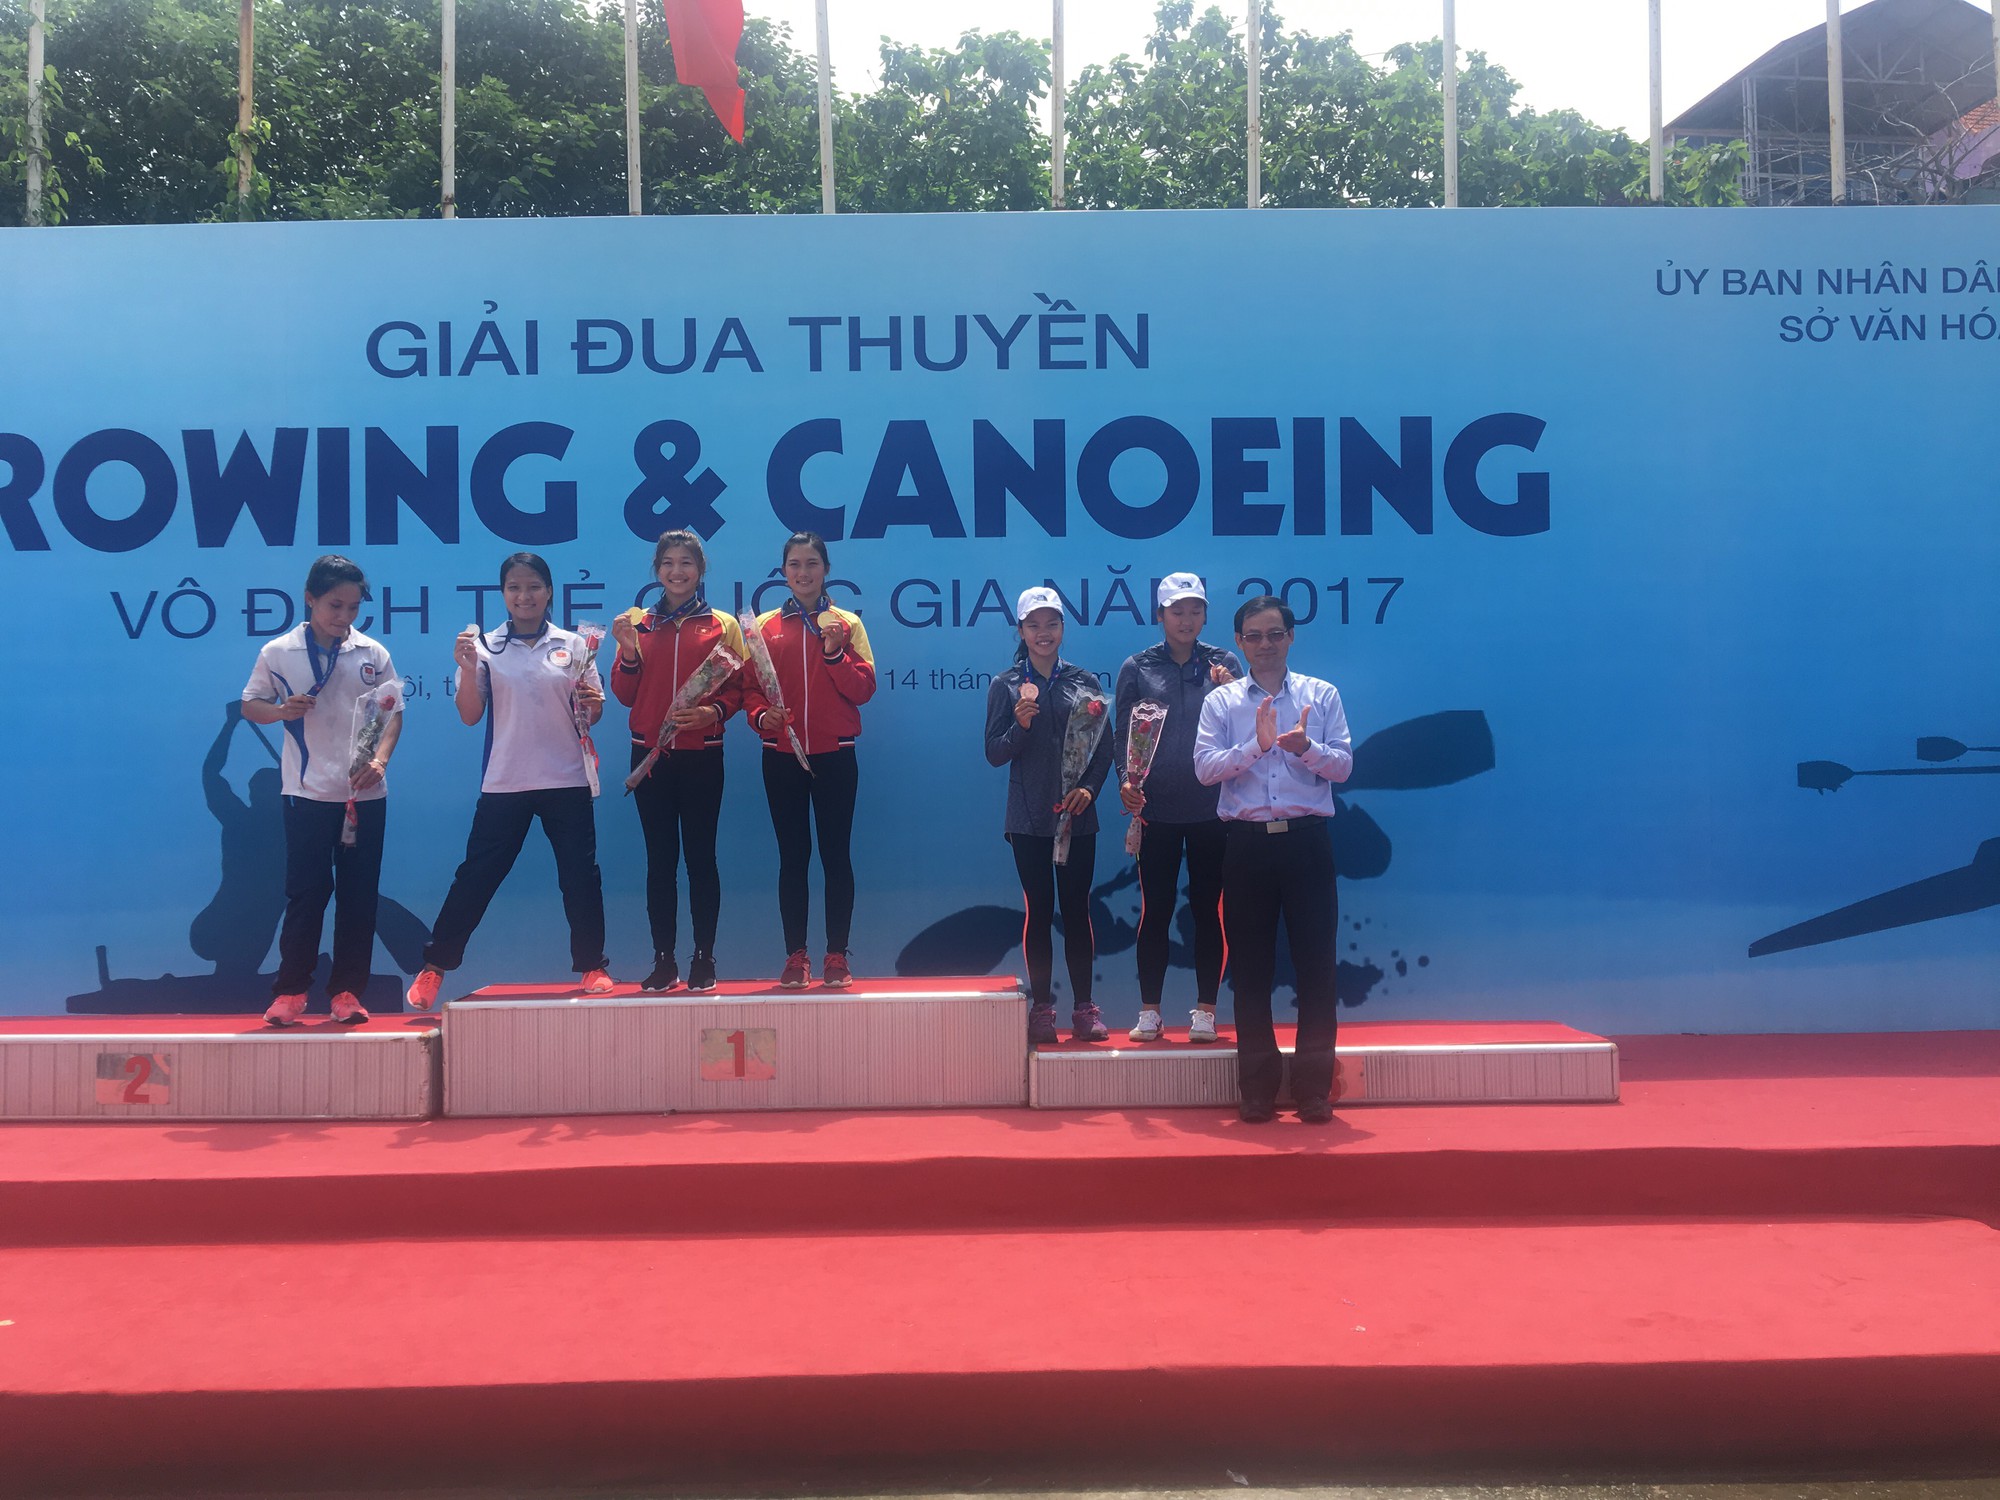 Chất lượng chuyên môn của giải đua thuyền Rowing và Canoeing trẻ vô địch quốc gia 2017 khá cao